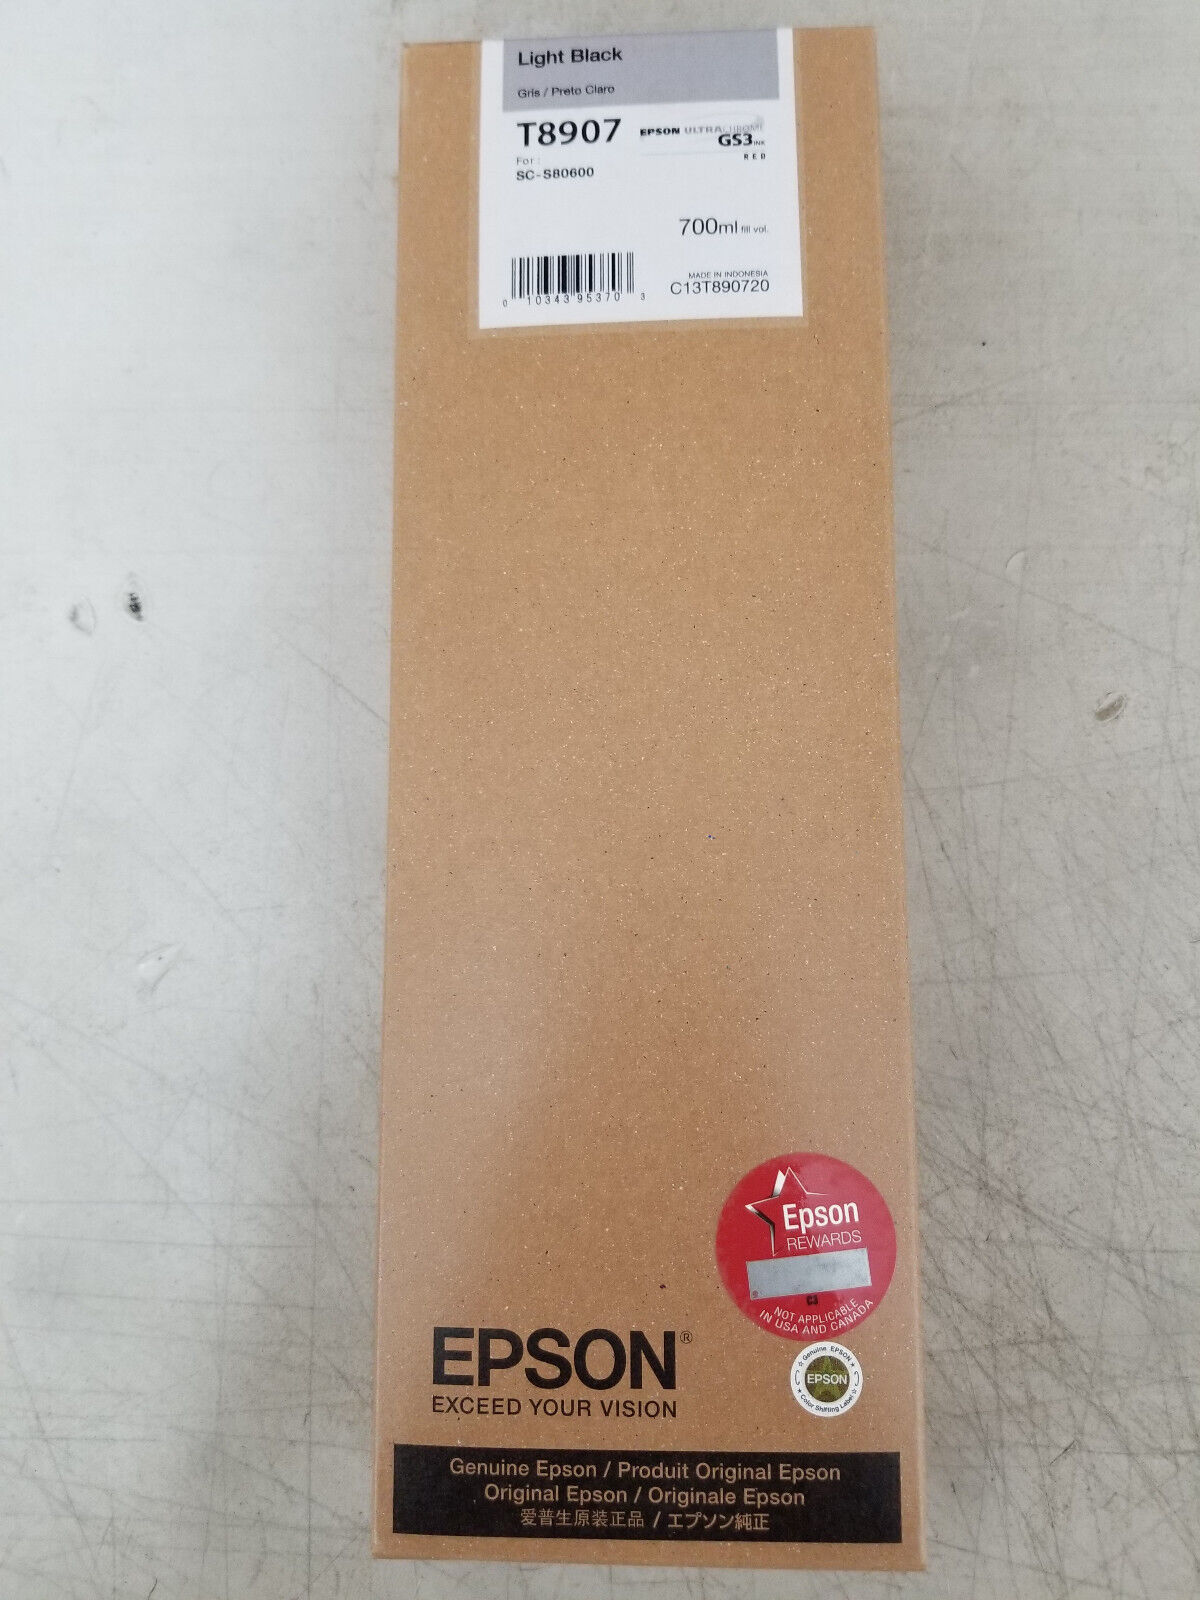 GENUINE Epson GS3 Light Black Ink 700ml (T8907) for S80600